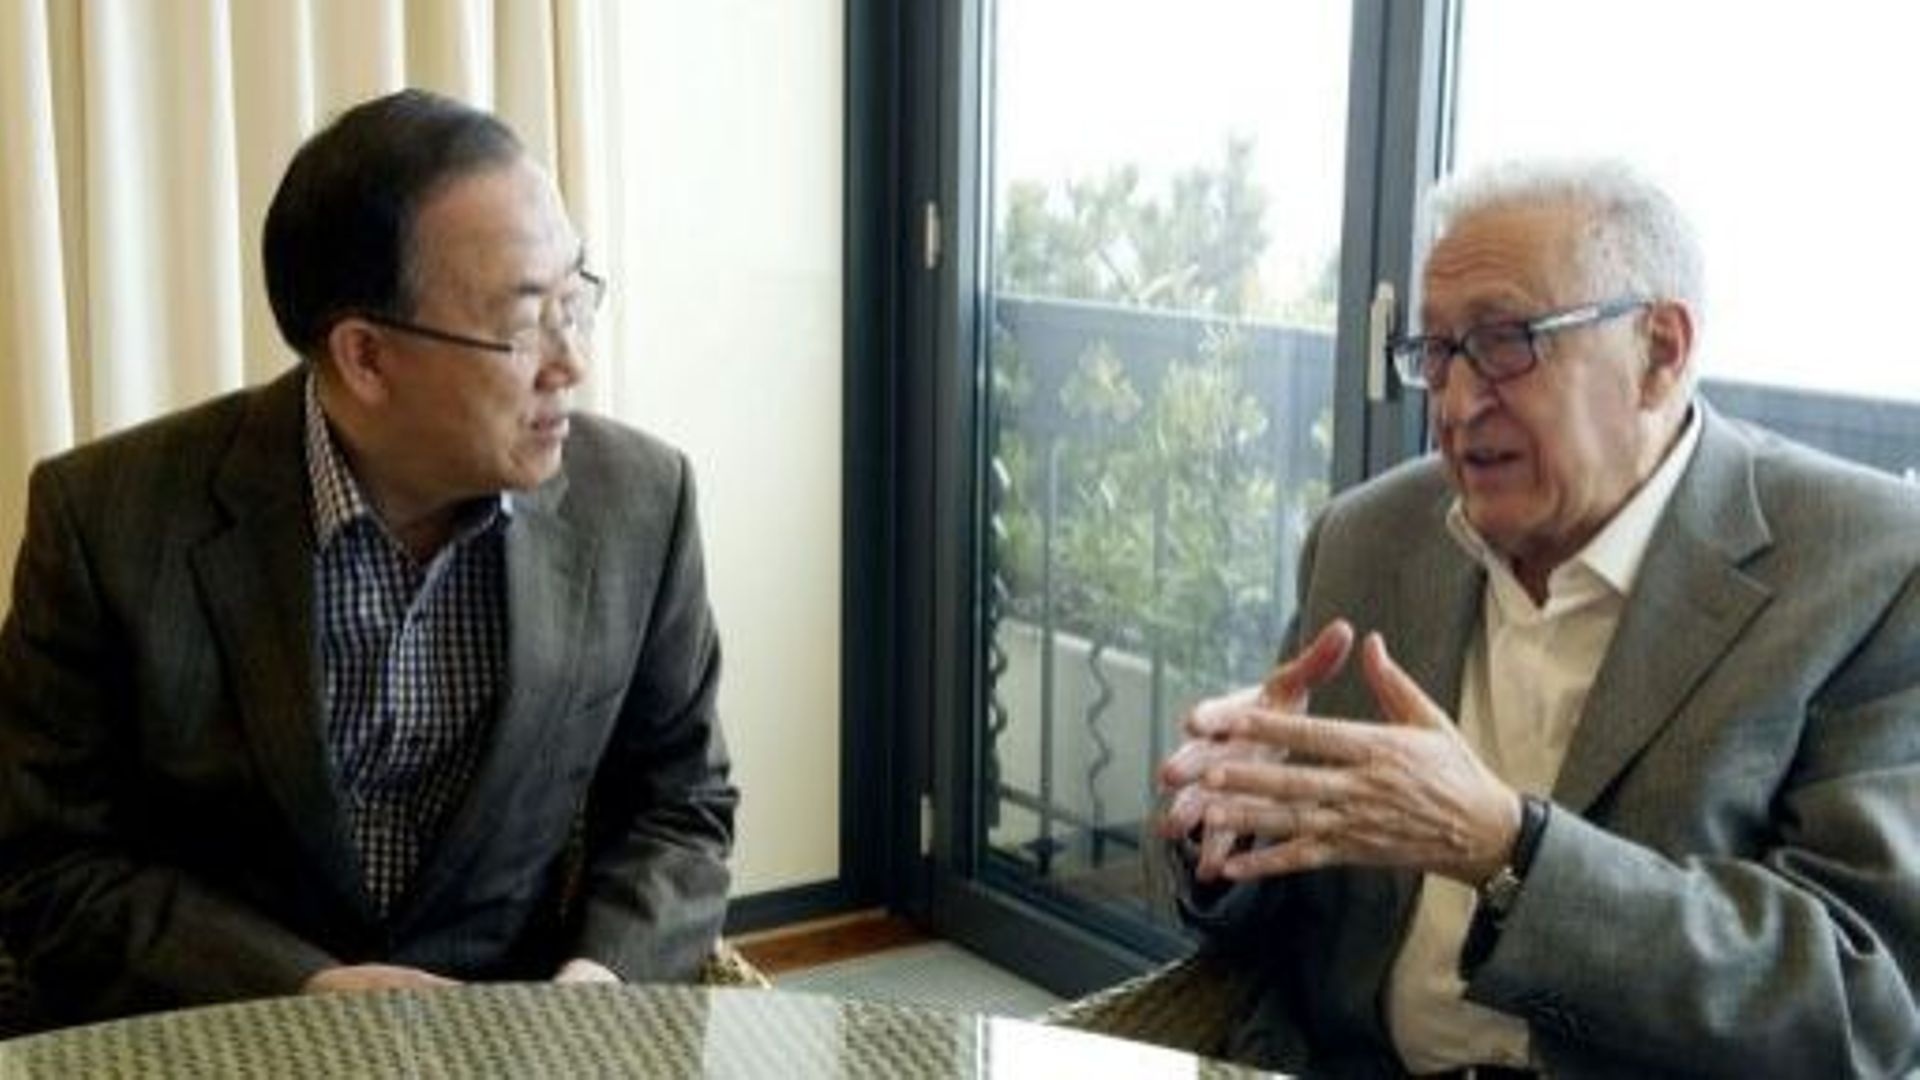 Le secrétaire général de l'ONU Ban Ki-moon reçoit le 2 mars 2013 en Suisse le médiateur international pour la Syrie Lakhdar Brahimi